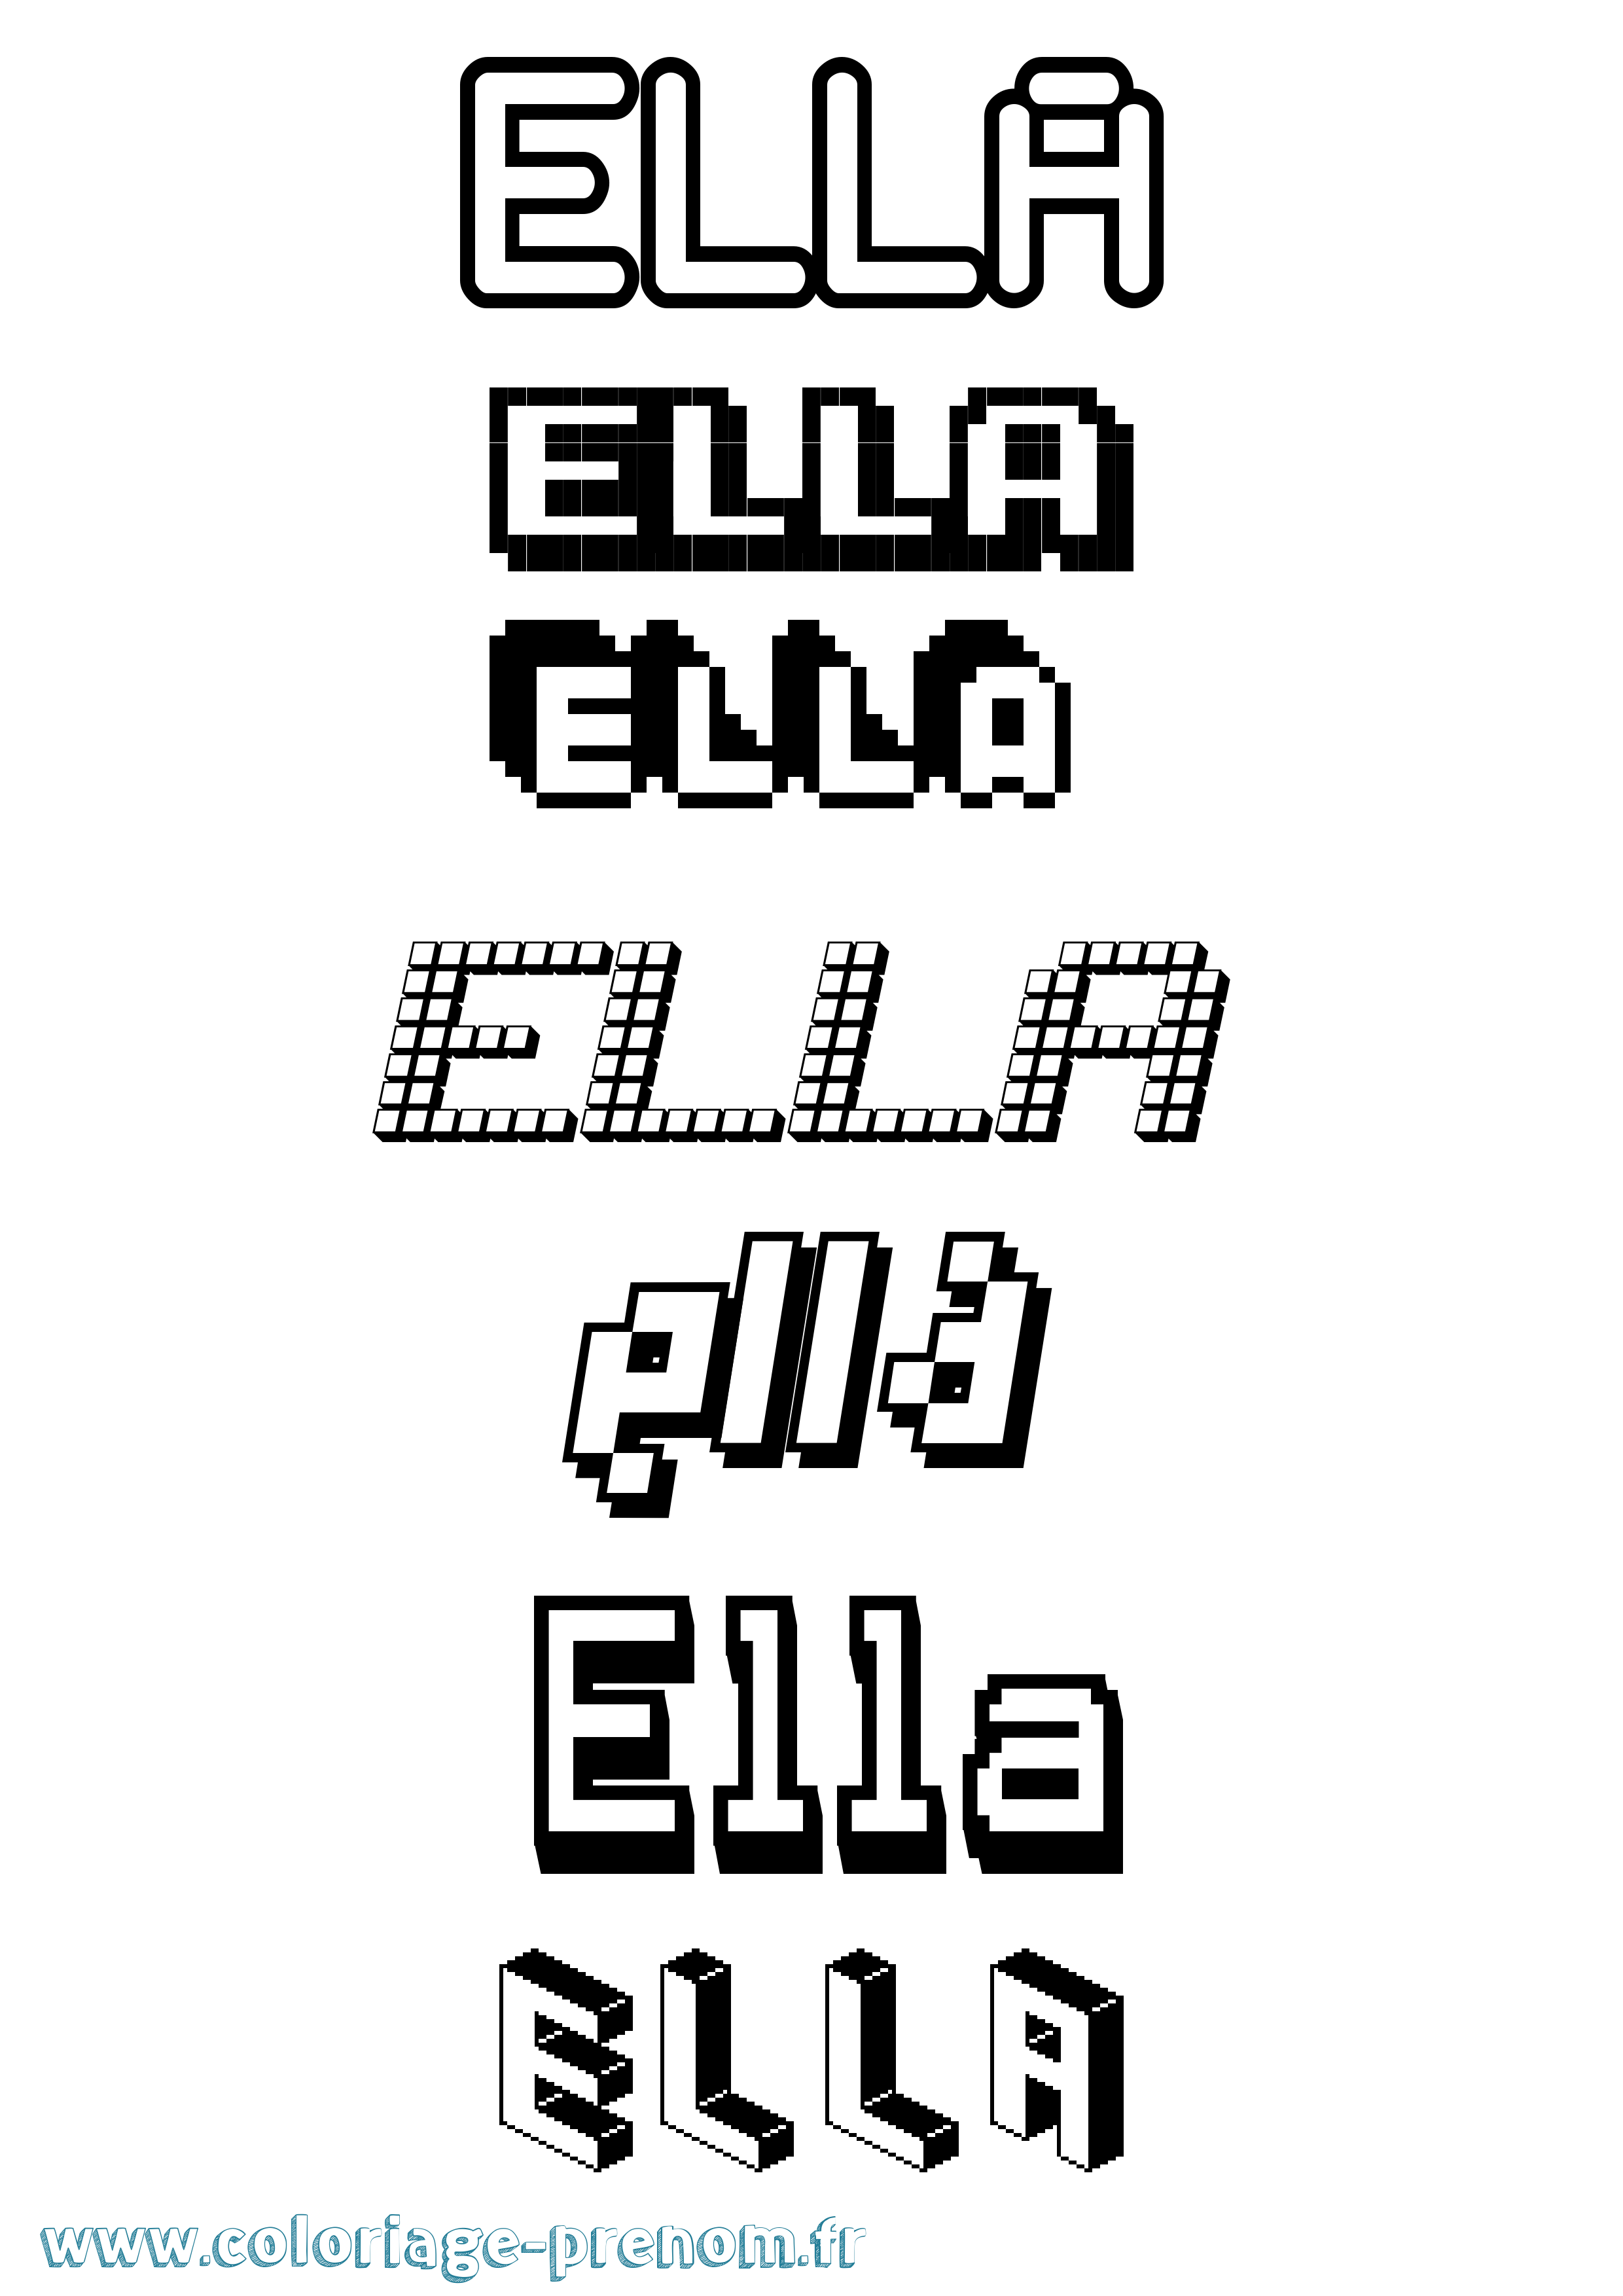 Coloriage prénom Ella Pixel